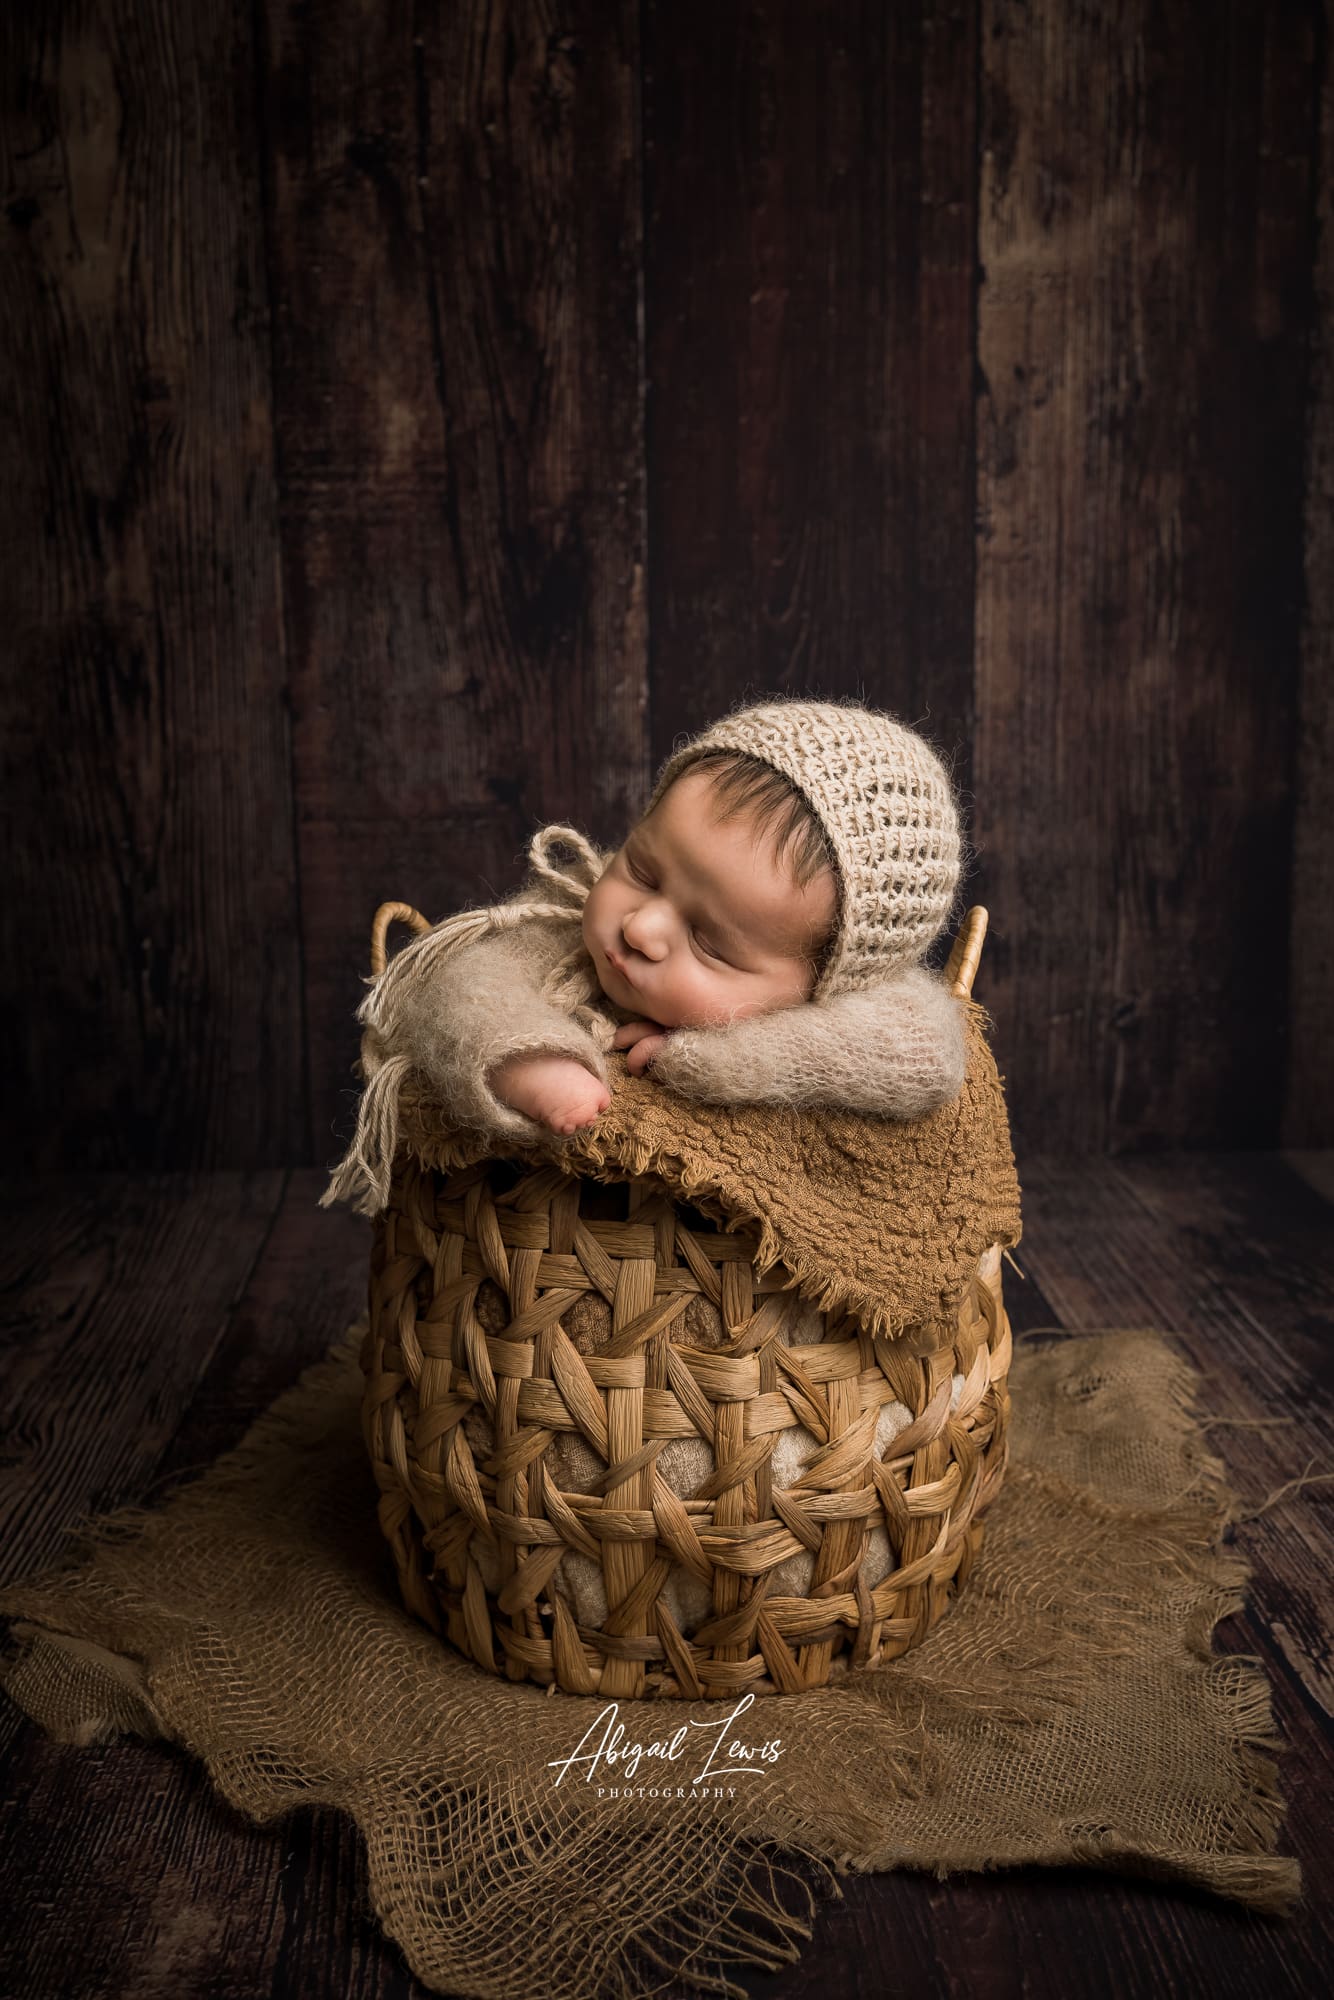 Newborn Baby in a honey pot basket on dark wooden background